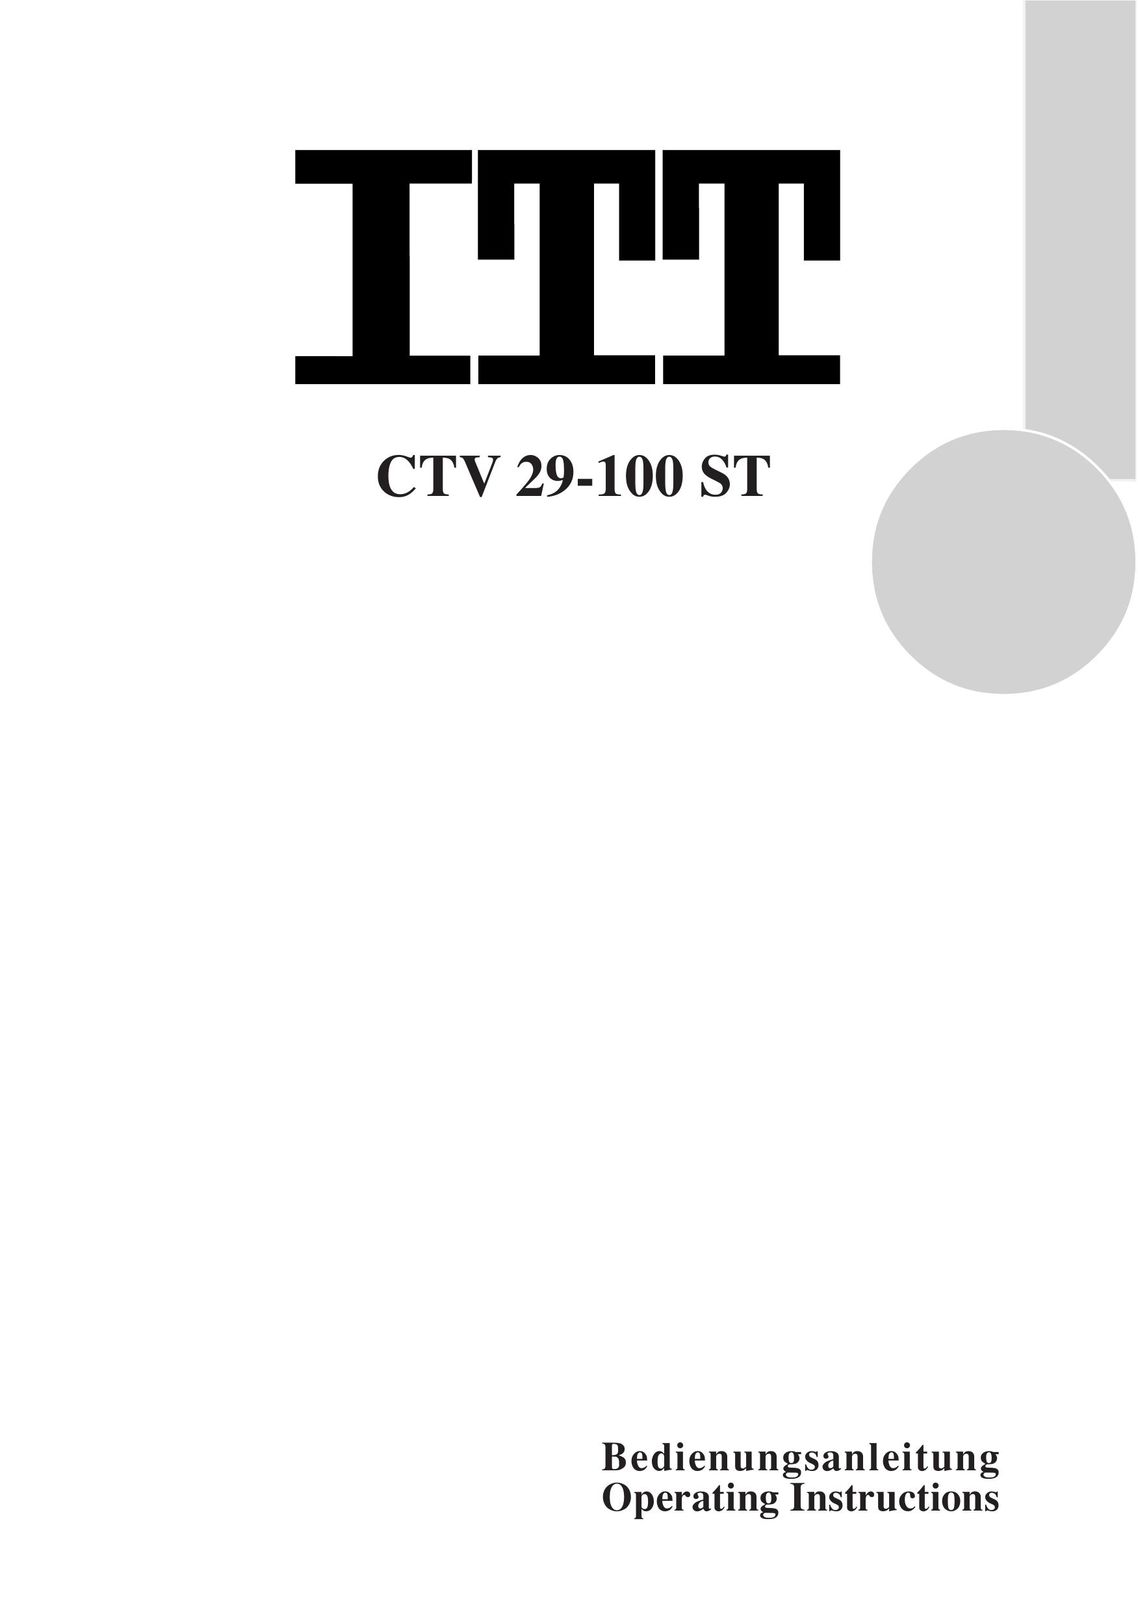 ITT CTV 29-100 ST TV Antenna User Manual